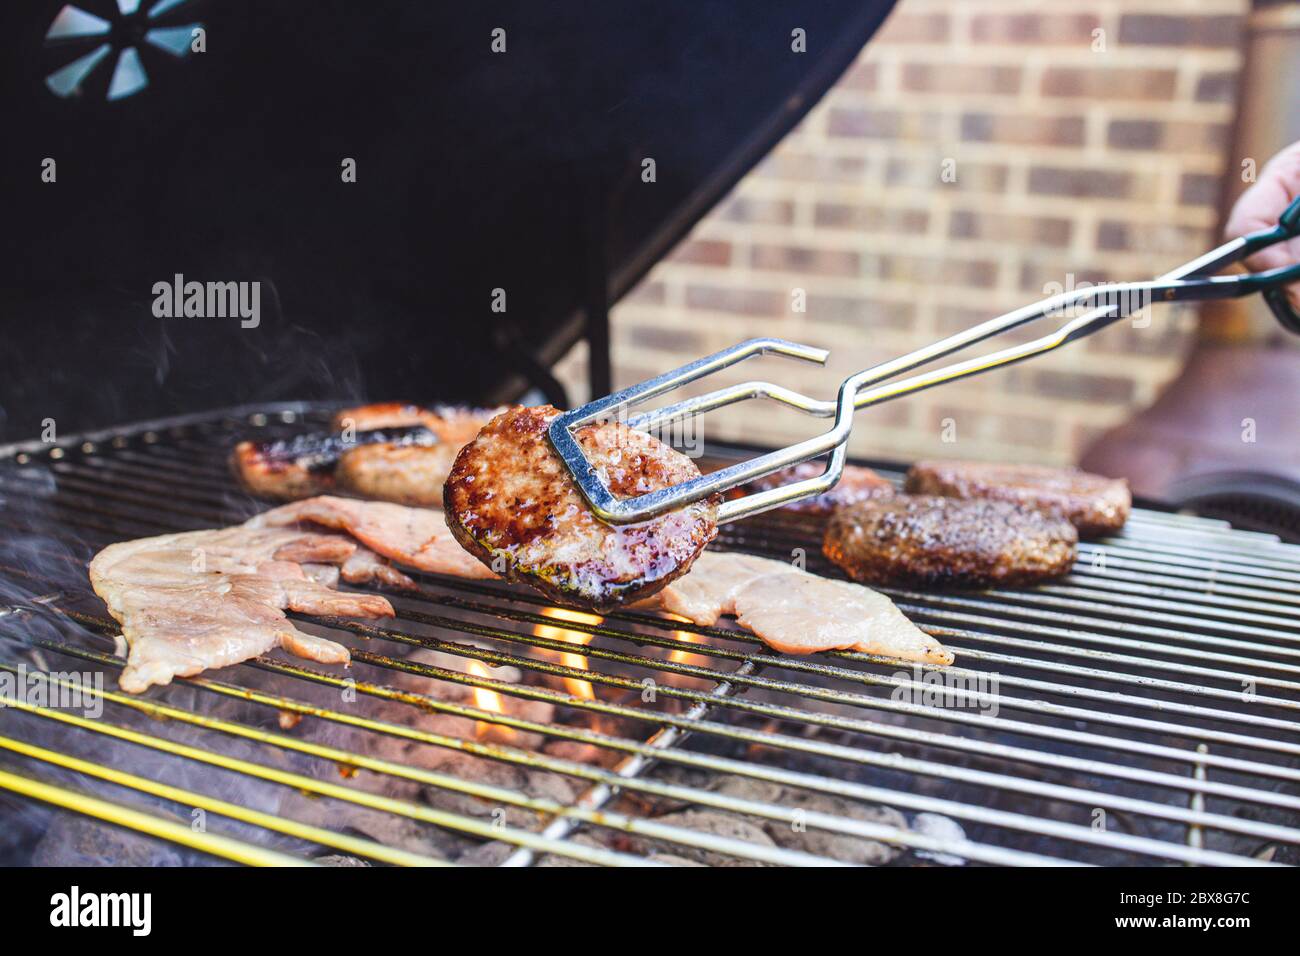 L'été, barbecue extérieur cuisant de la viande Banque D'Images